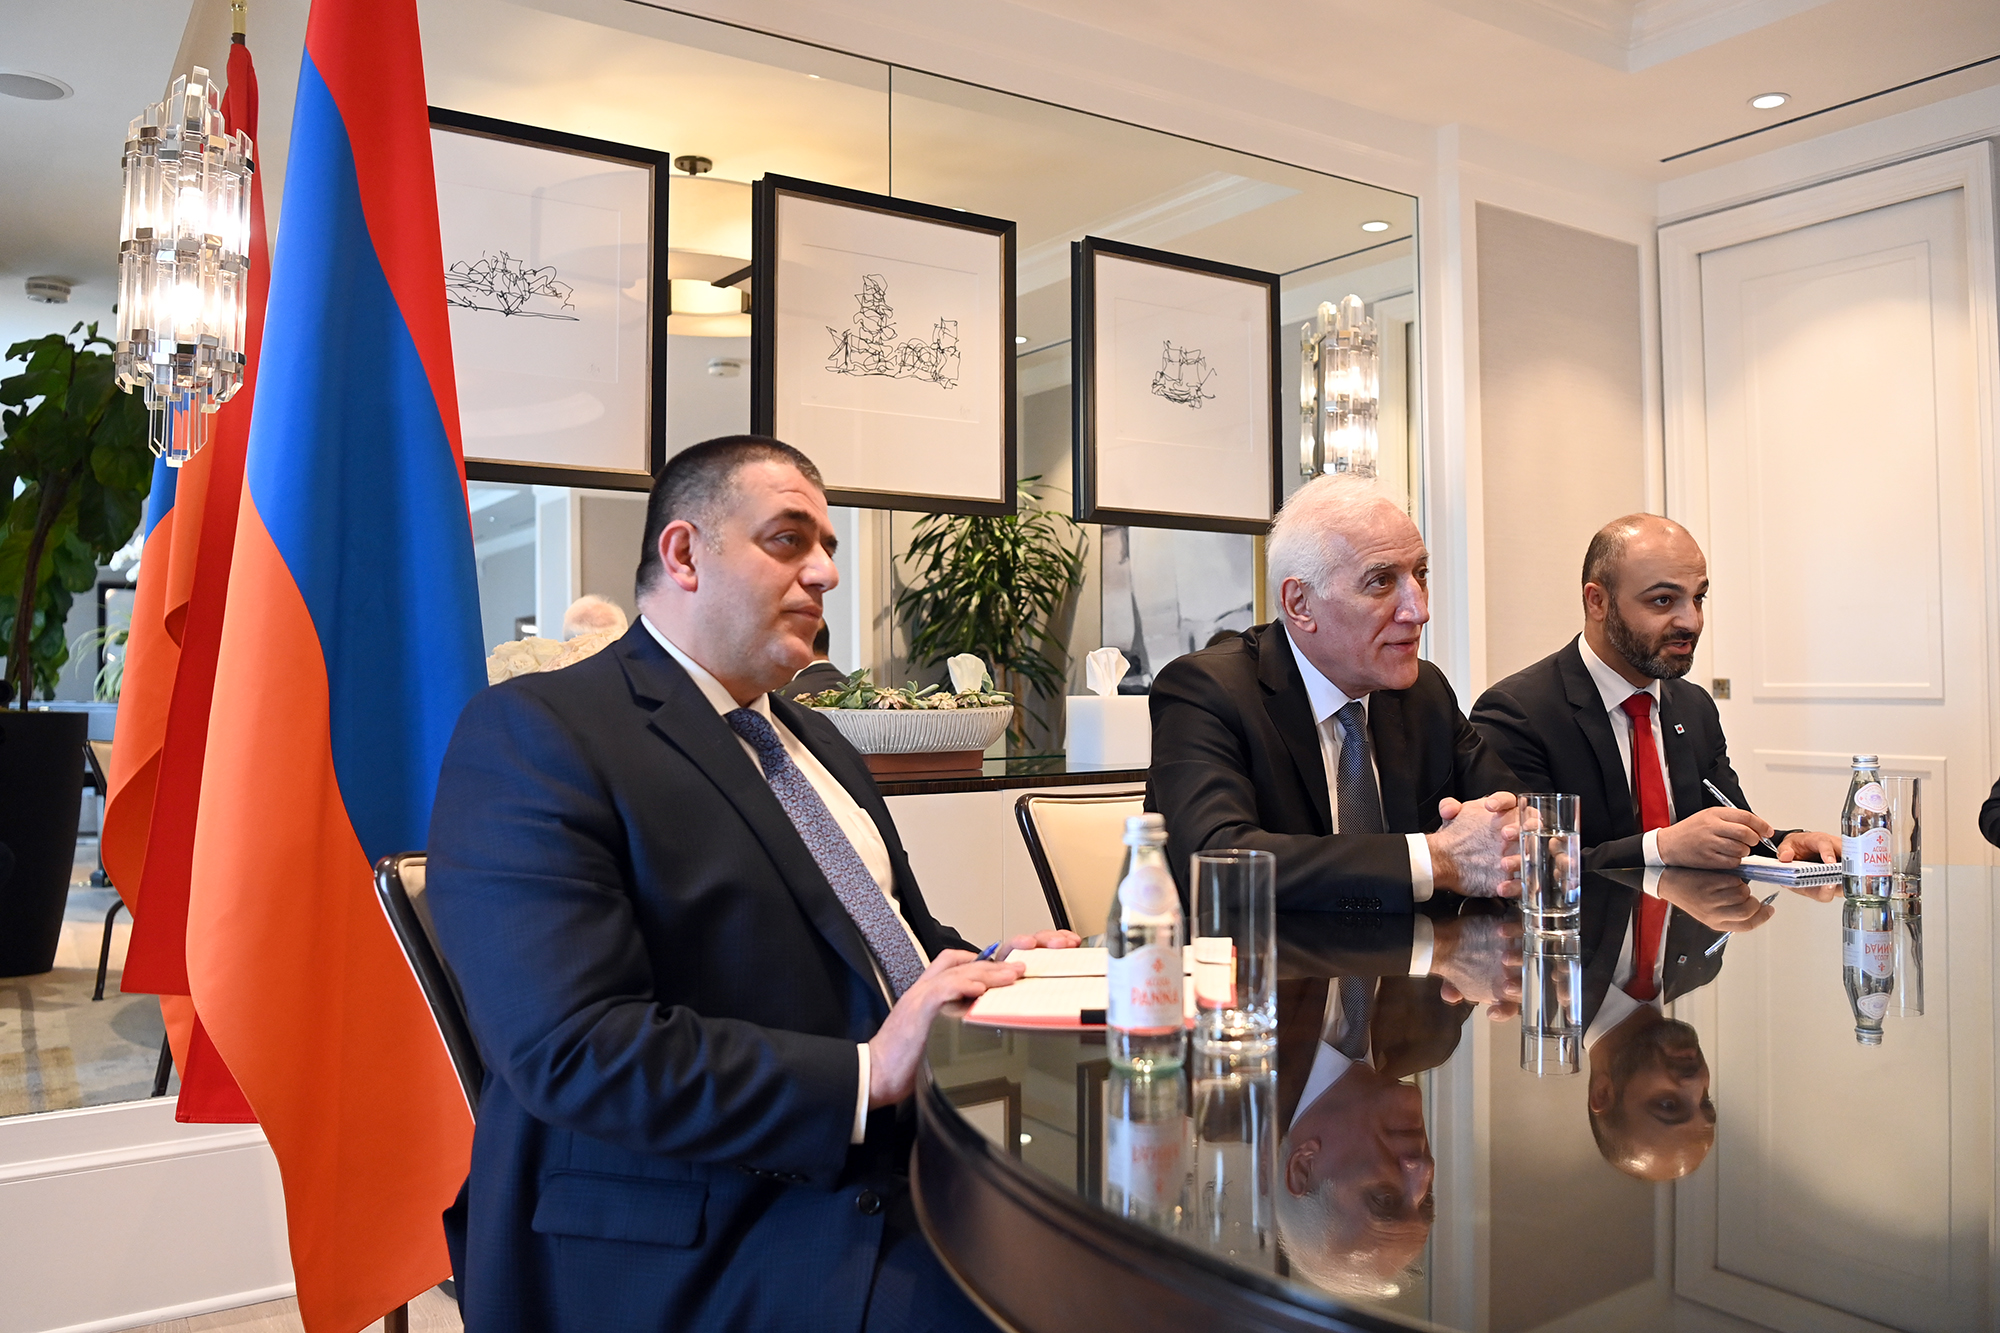 Քննարկվել են Փասադենայի և Հայաստանի քաղաքների միջև քույր քաղաքների սկզբունքով համագործակցության խթանման հնարավորությունները